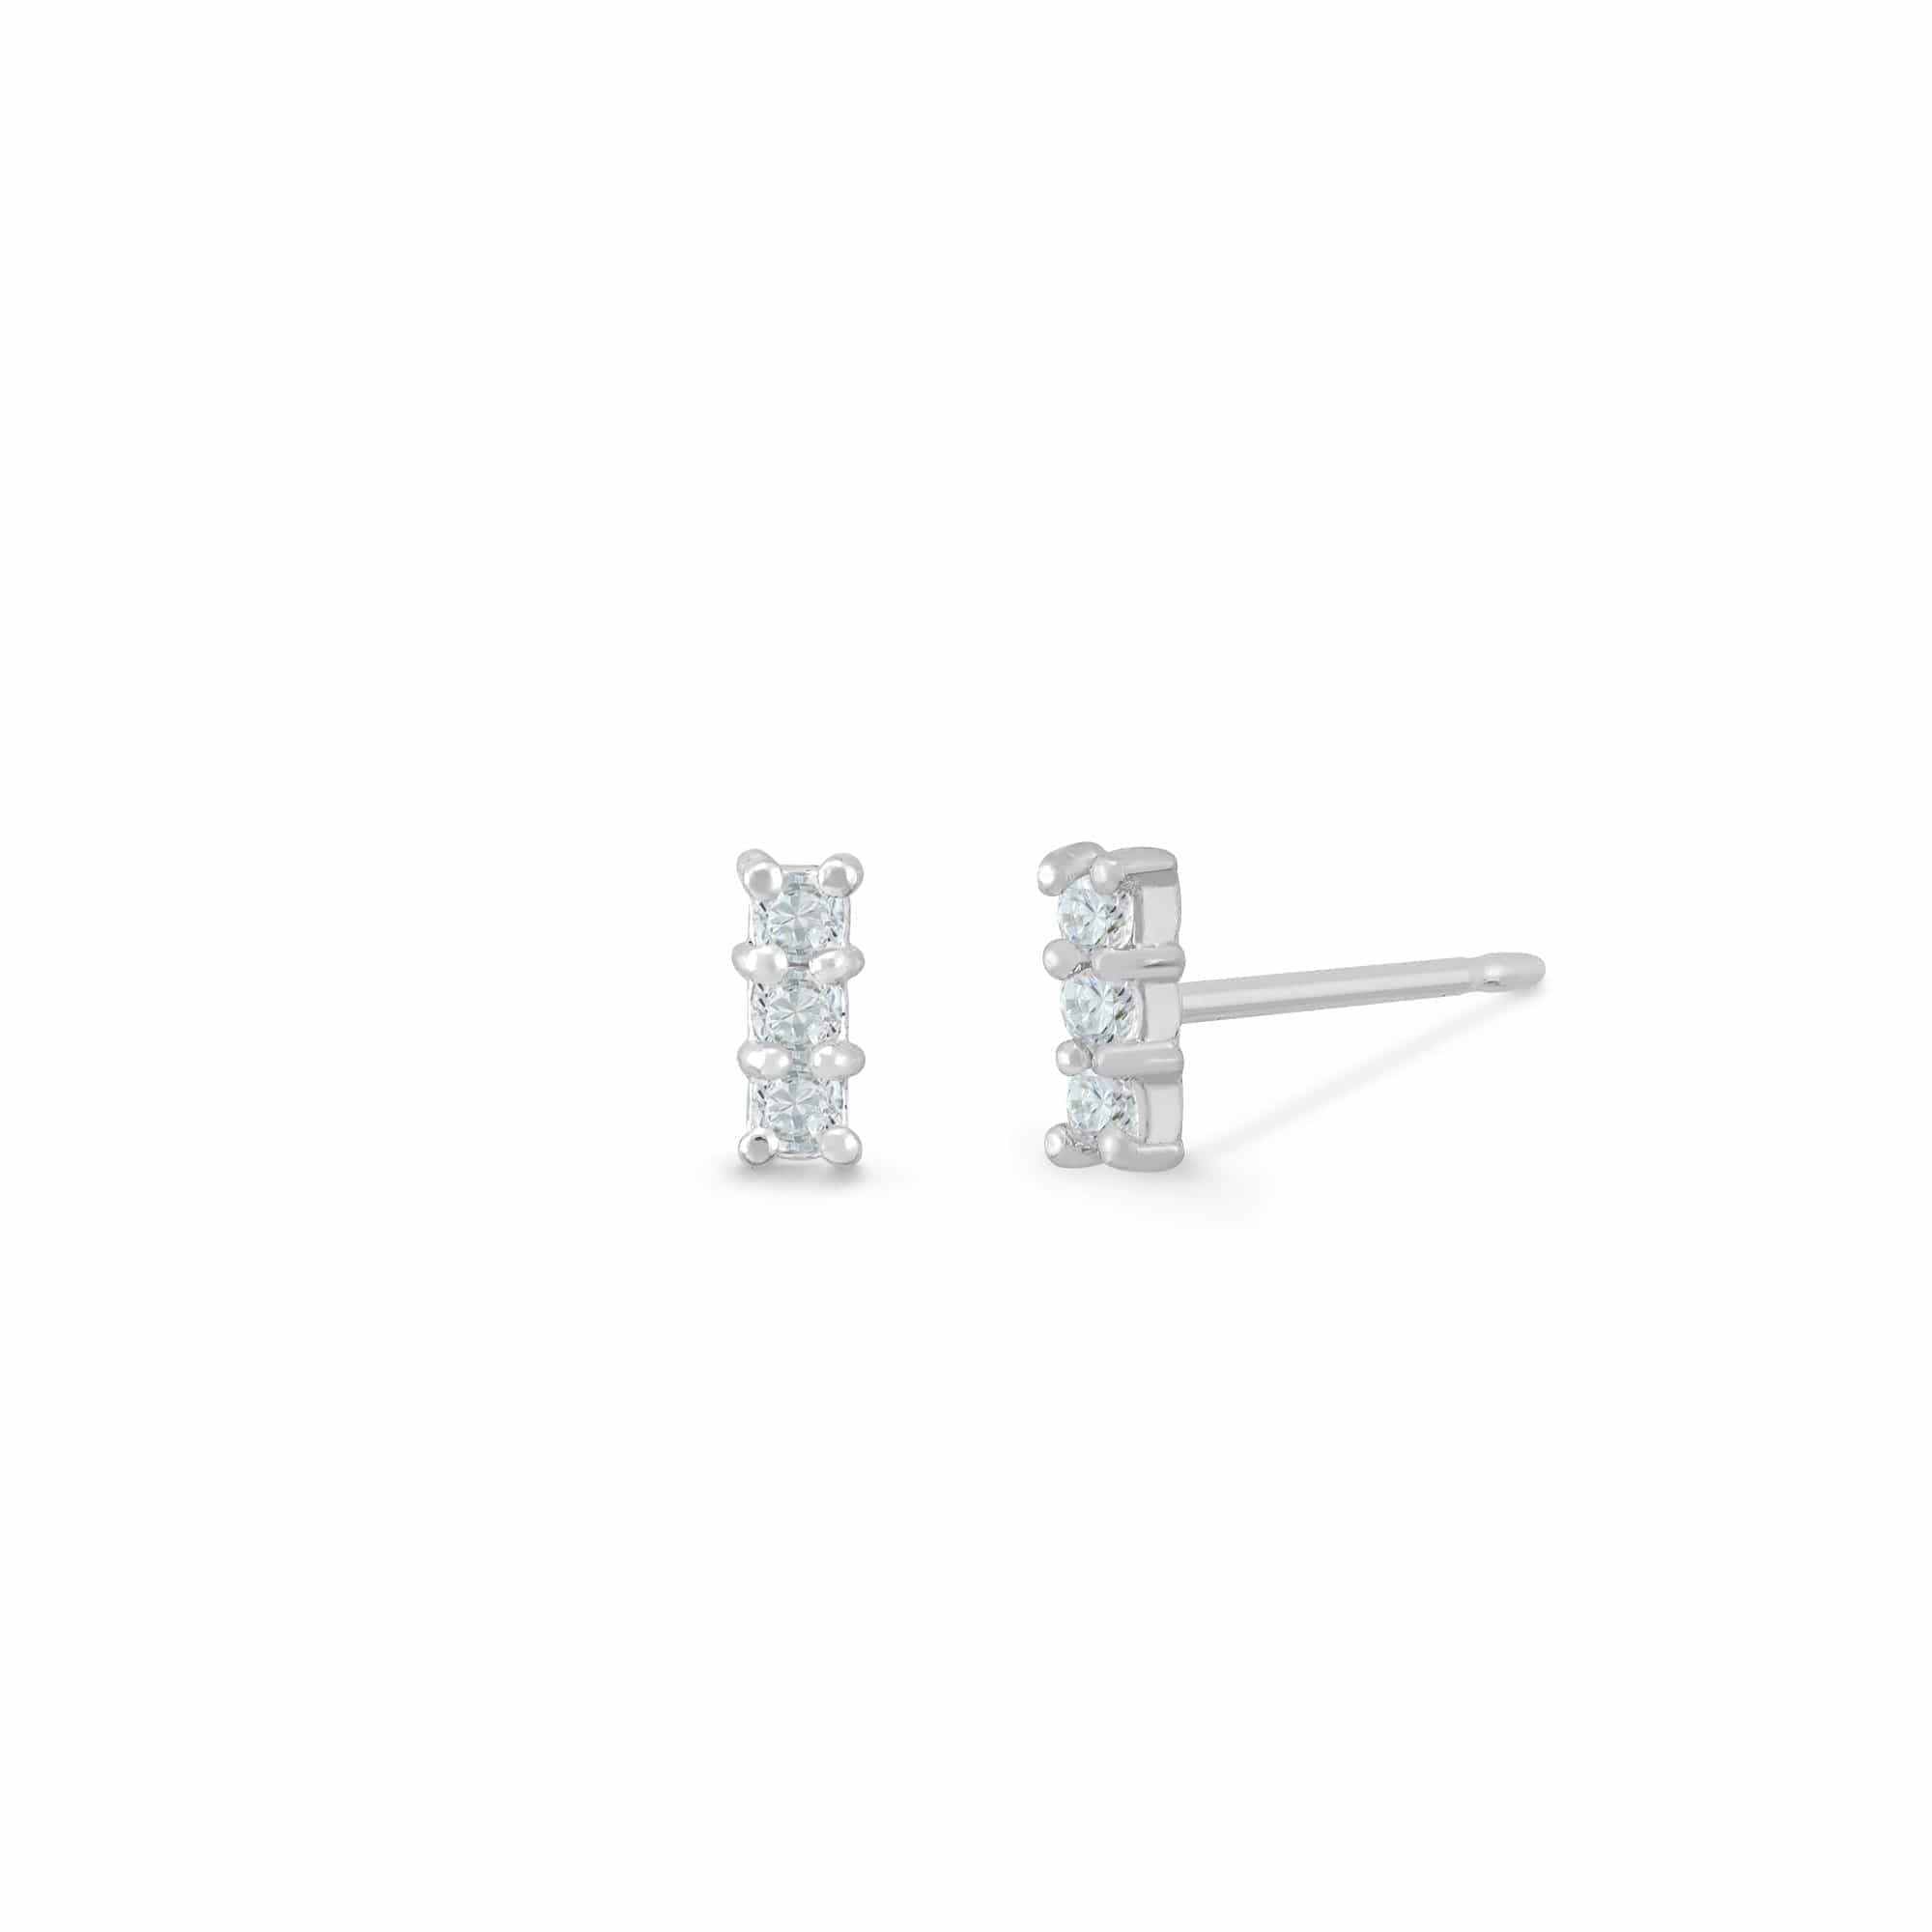 Boma Jewelry Earrings White Topaz Mini Gemstone Bar Studs